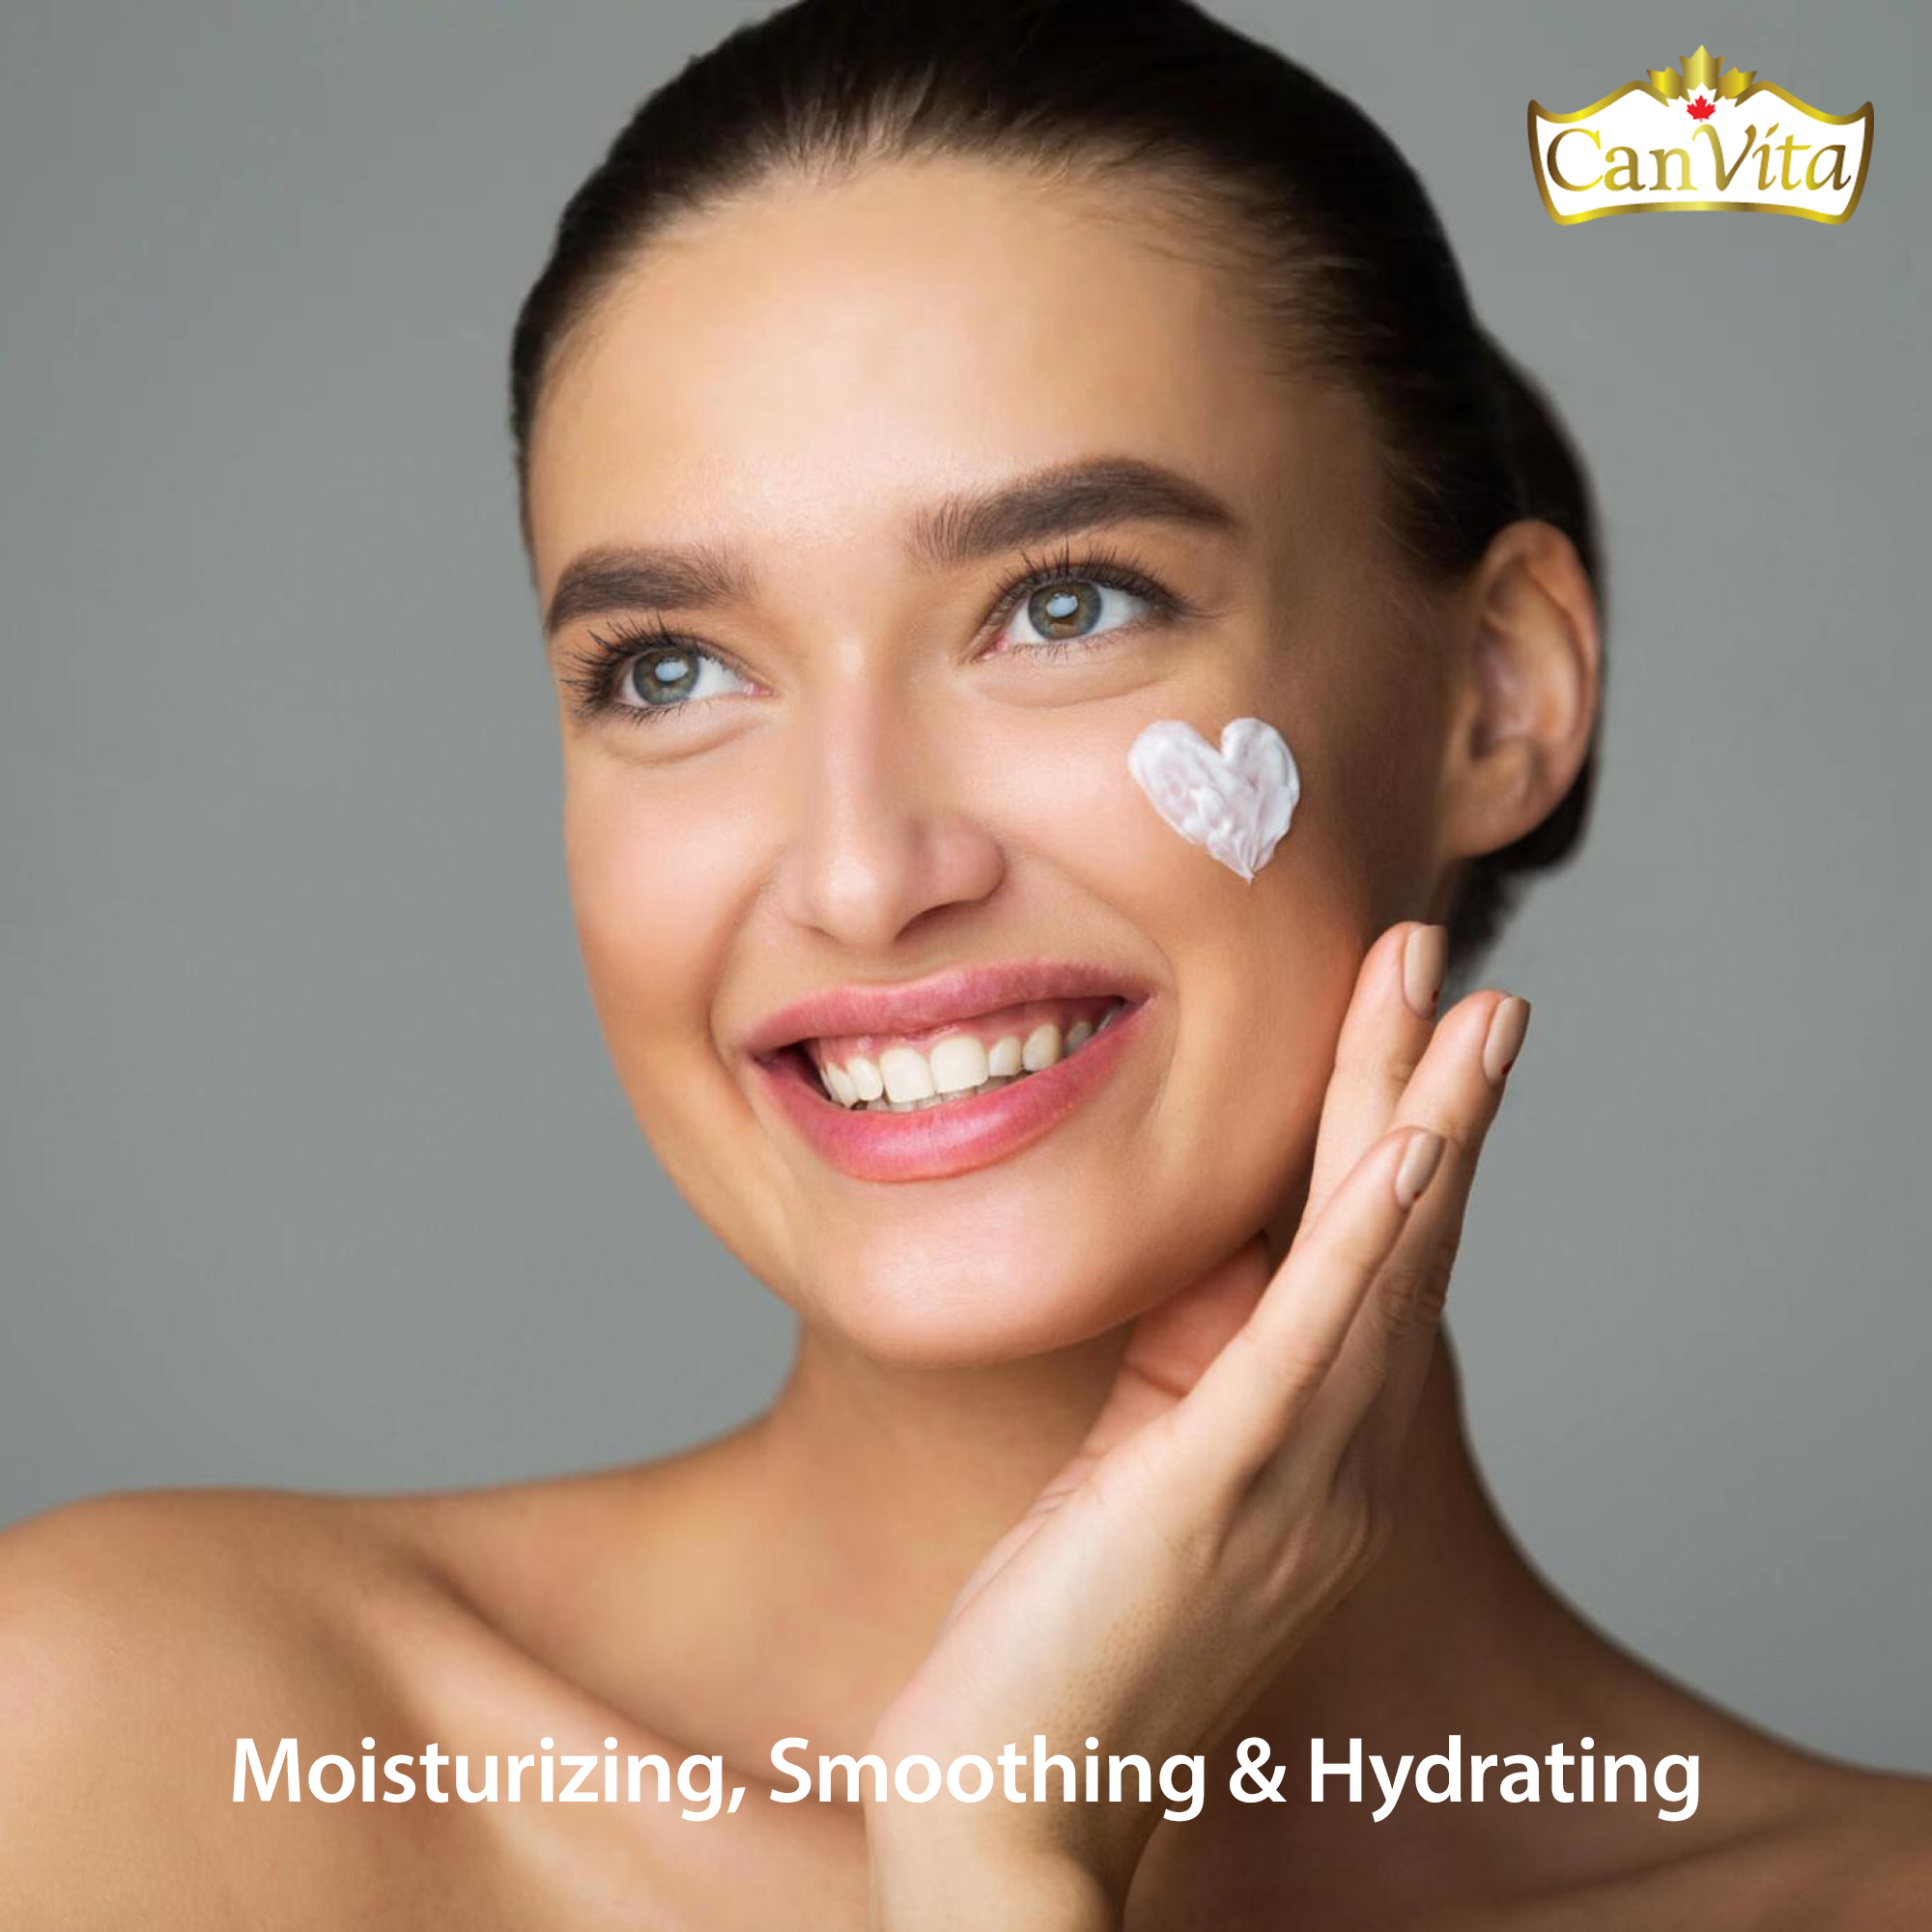 CANVITA Moisturizing 6 in 1 Face Cream